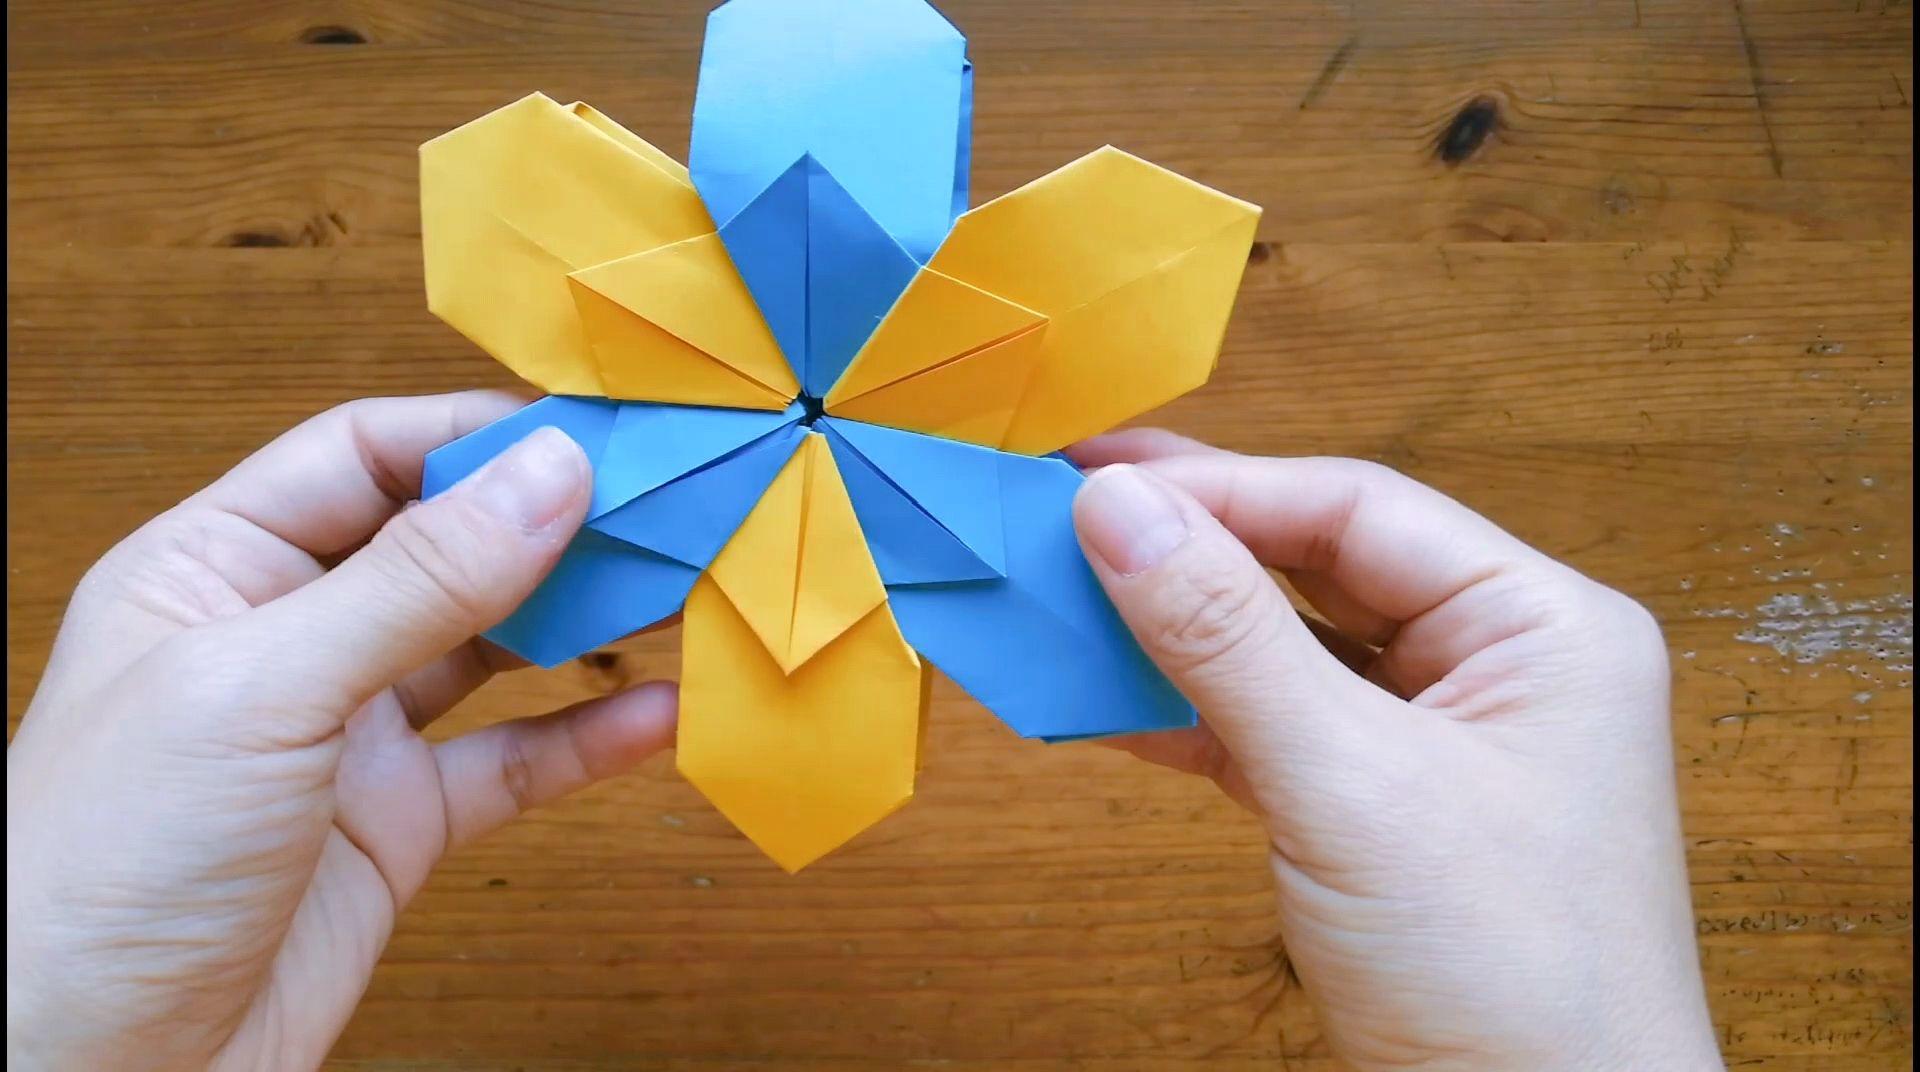 无敌风火轮—手工折纸技能挑战!孩子可以玩一整天!